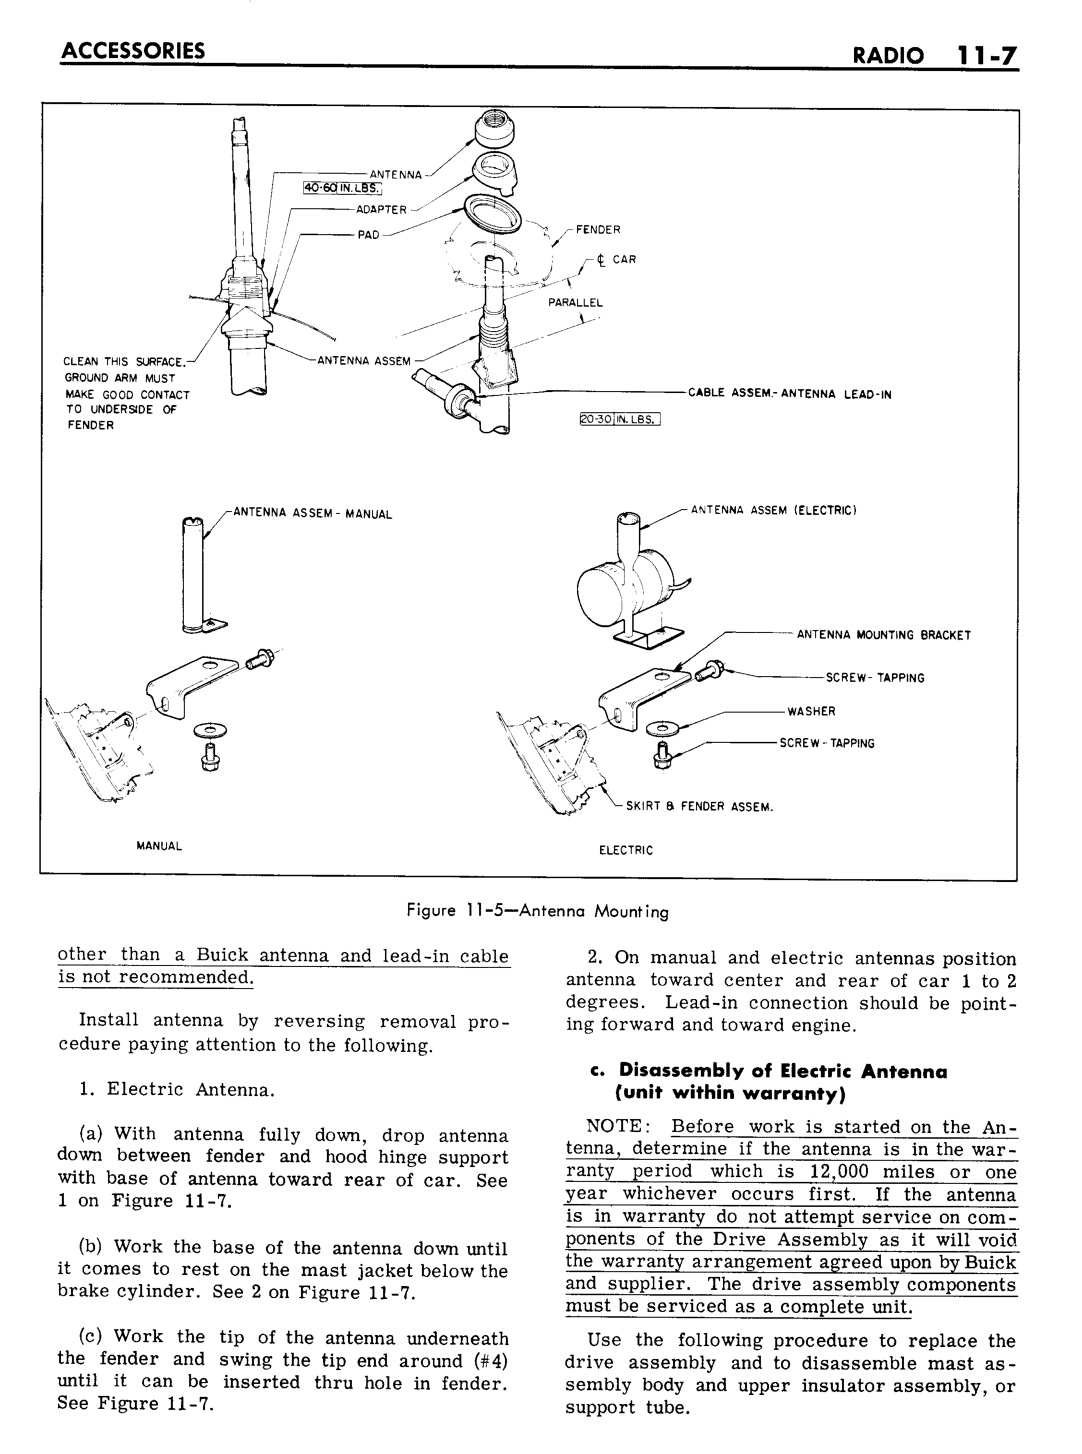 n_11 1961 Buick Shop Manual - Accessories-007-007.jpg